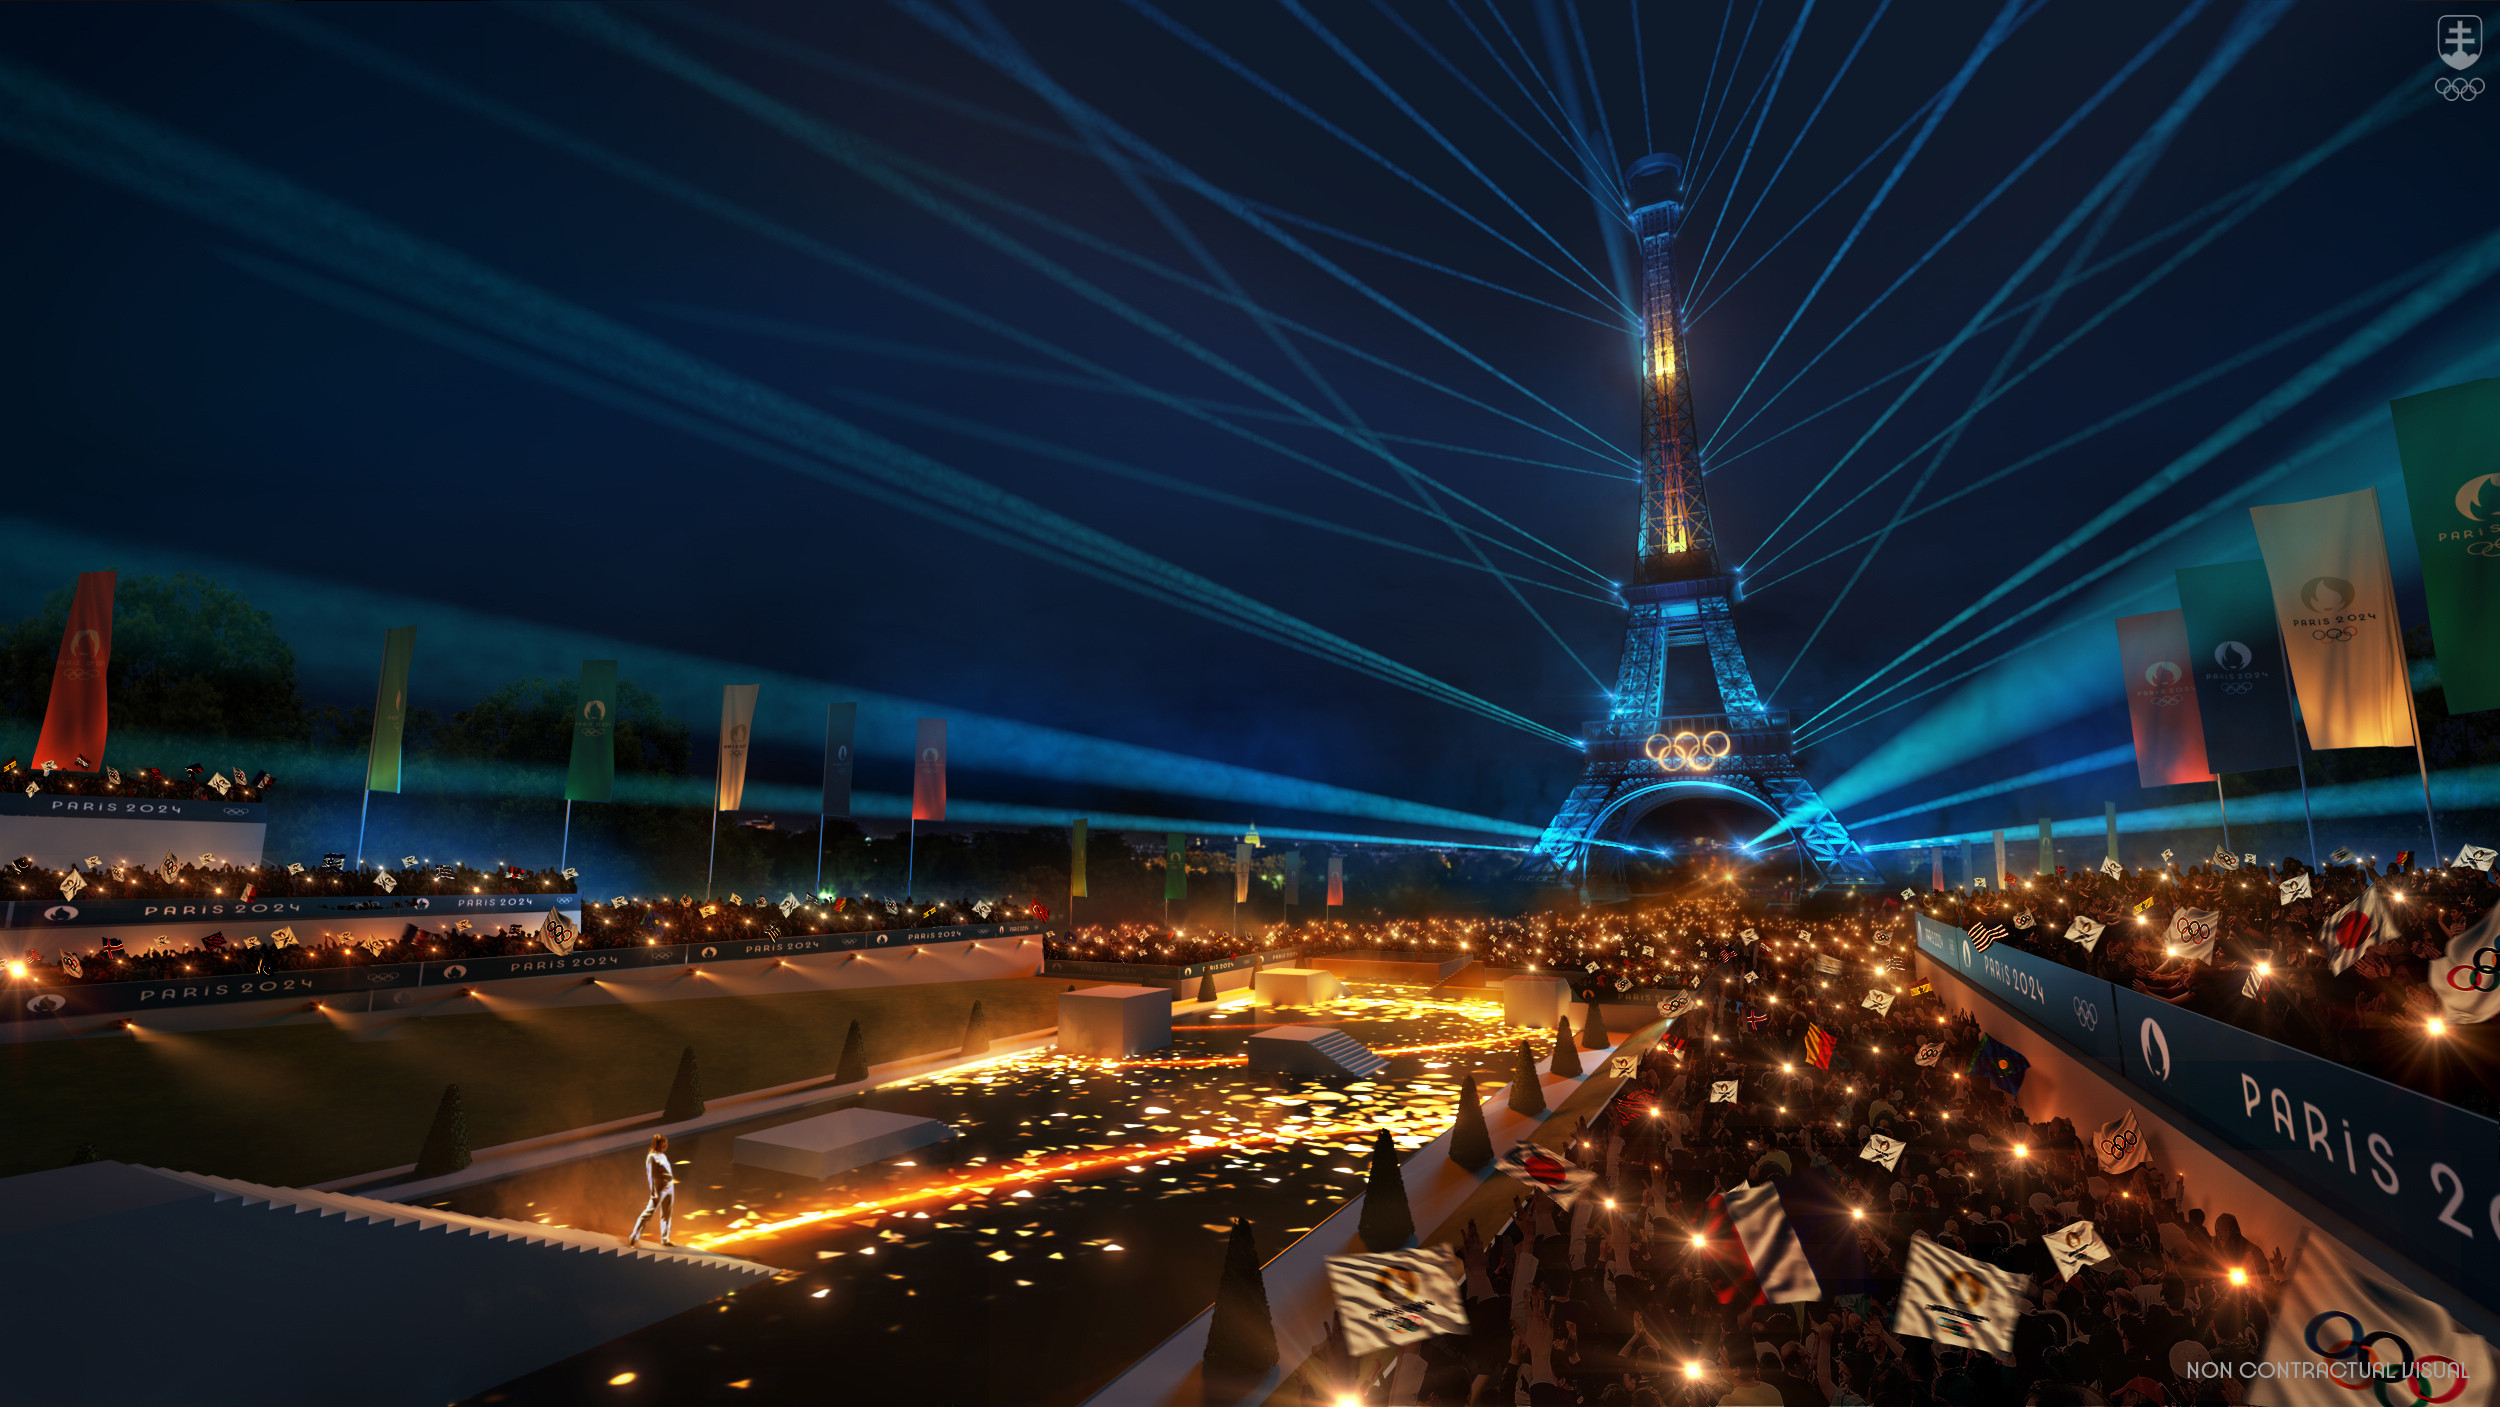 Najväčšie bezpečnostné riziká sa spájajú so slávnostnom otvorením OH 2024 v Paríži, ktoré majú vyvrcholiť na námestí Trocadéro (viď vizualizácia).